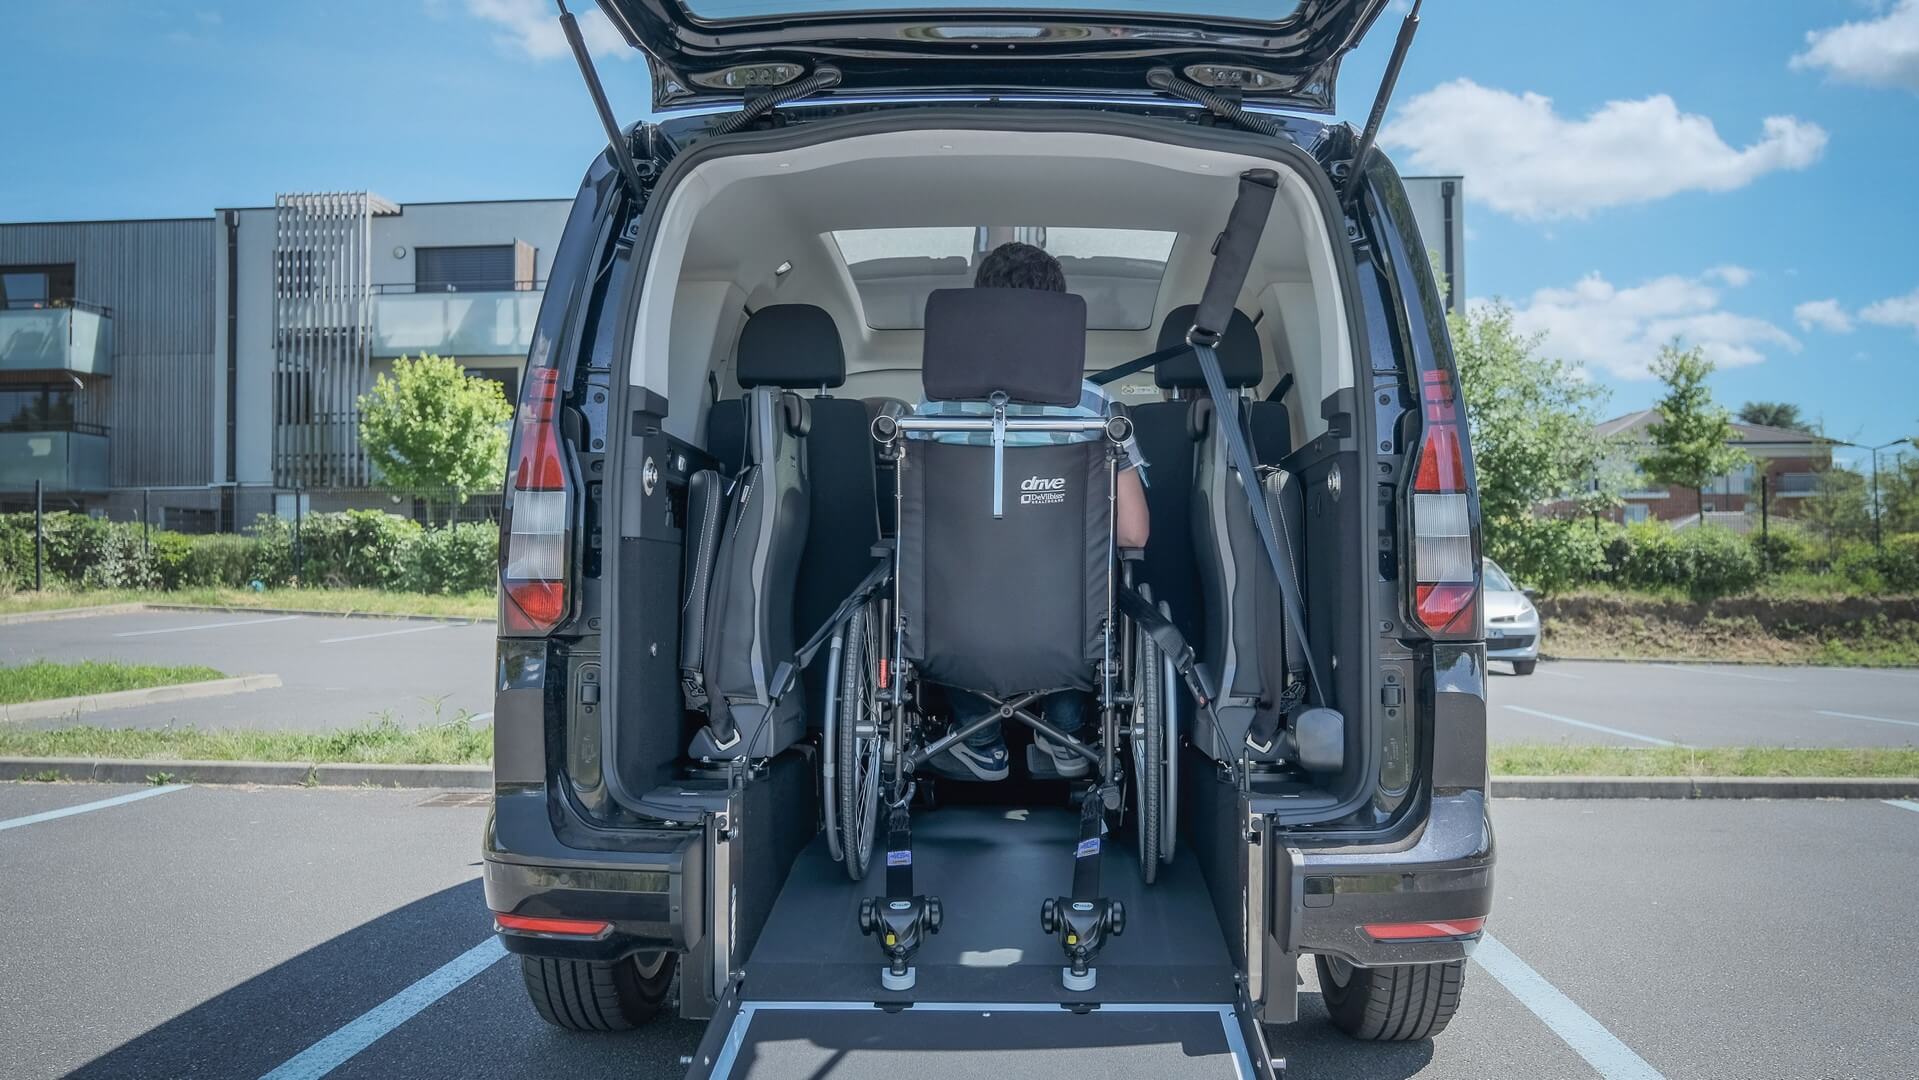 Votre proche en fauteuil roulant voyage confortablement et proche du rang 2 pour des trajets conviviaux dans le Volkswagen Caddy